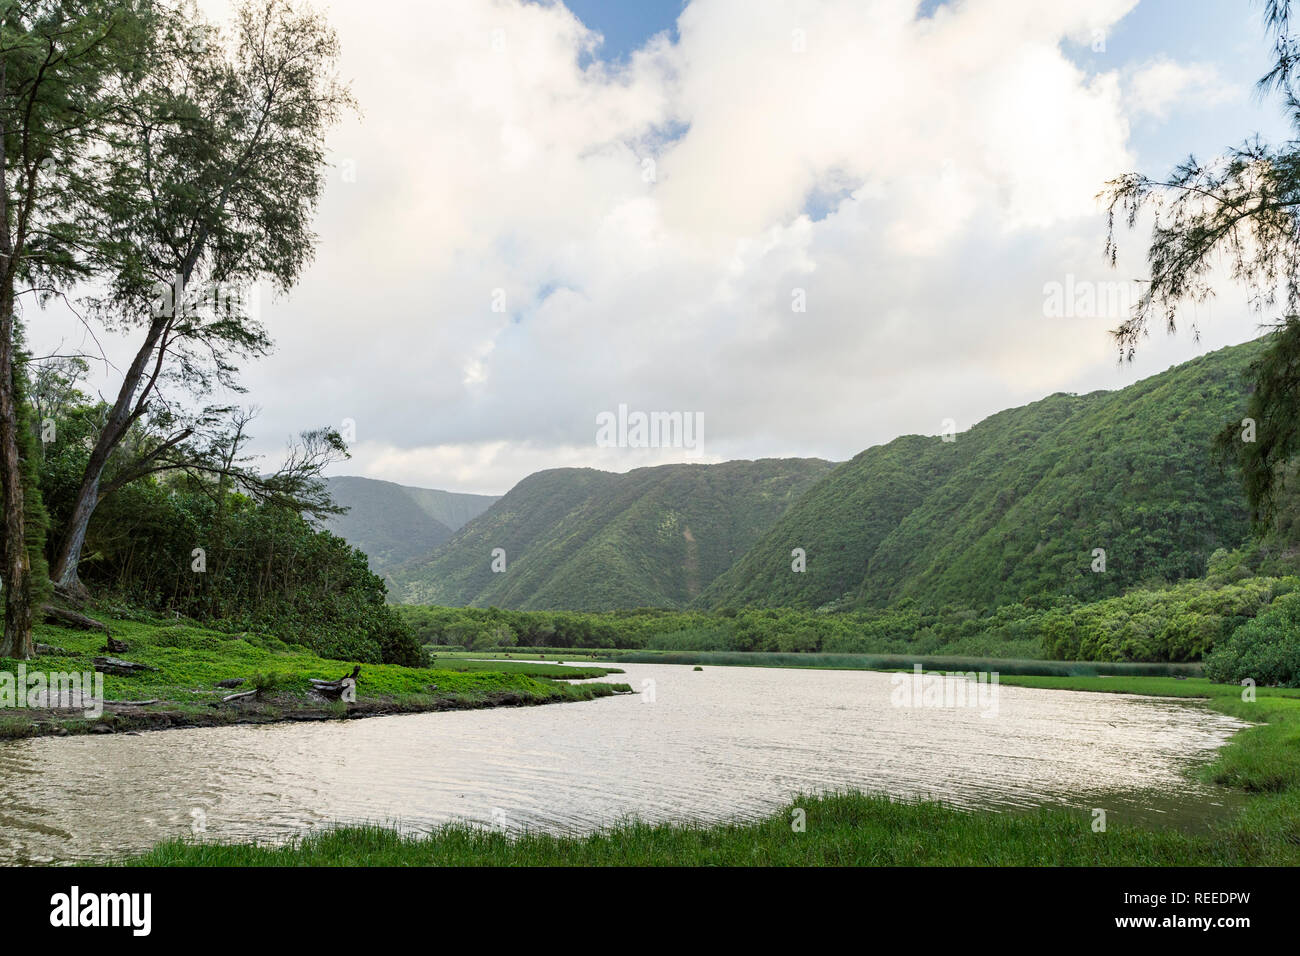 Polulu luxuriante vallée sur la grande île d'Hawaï Banque D'Images